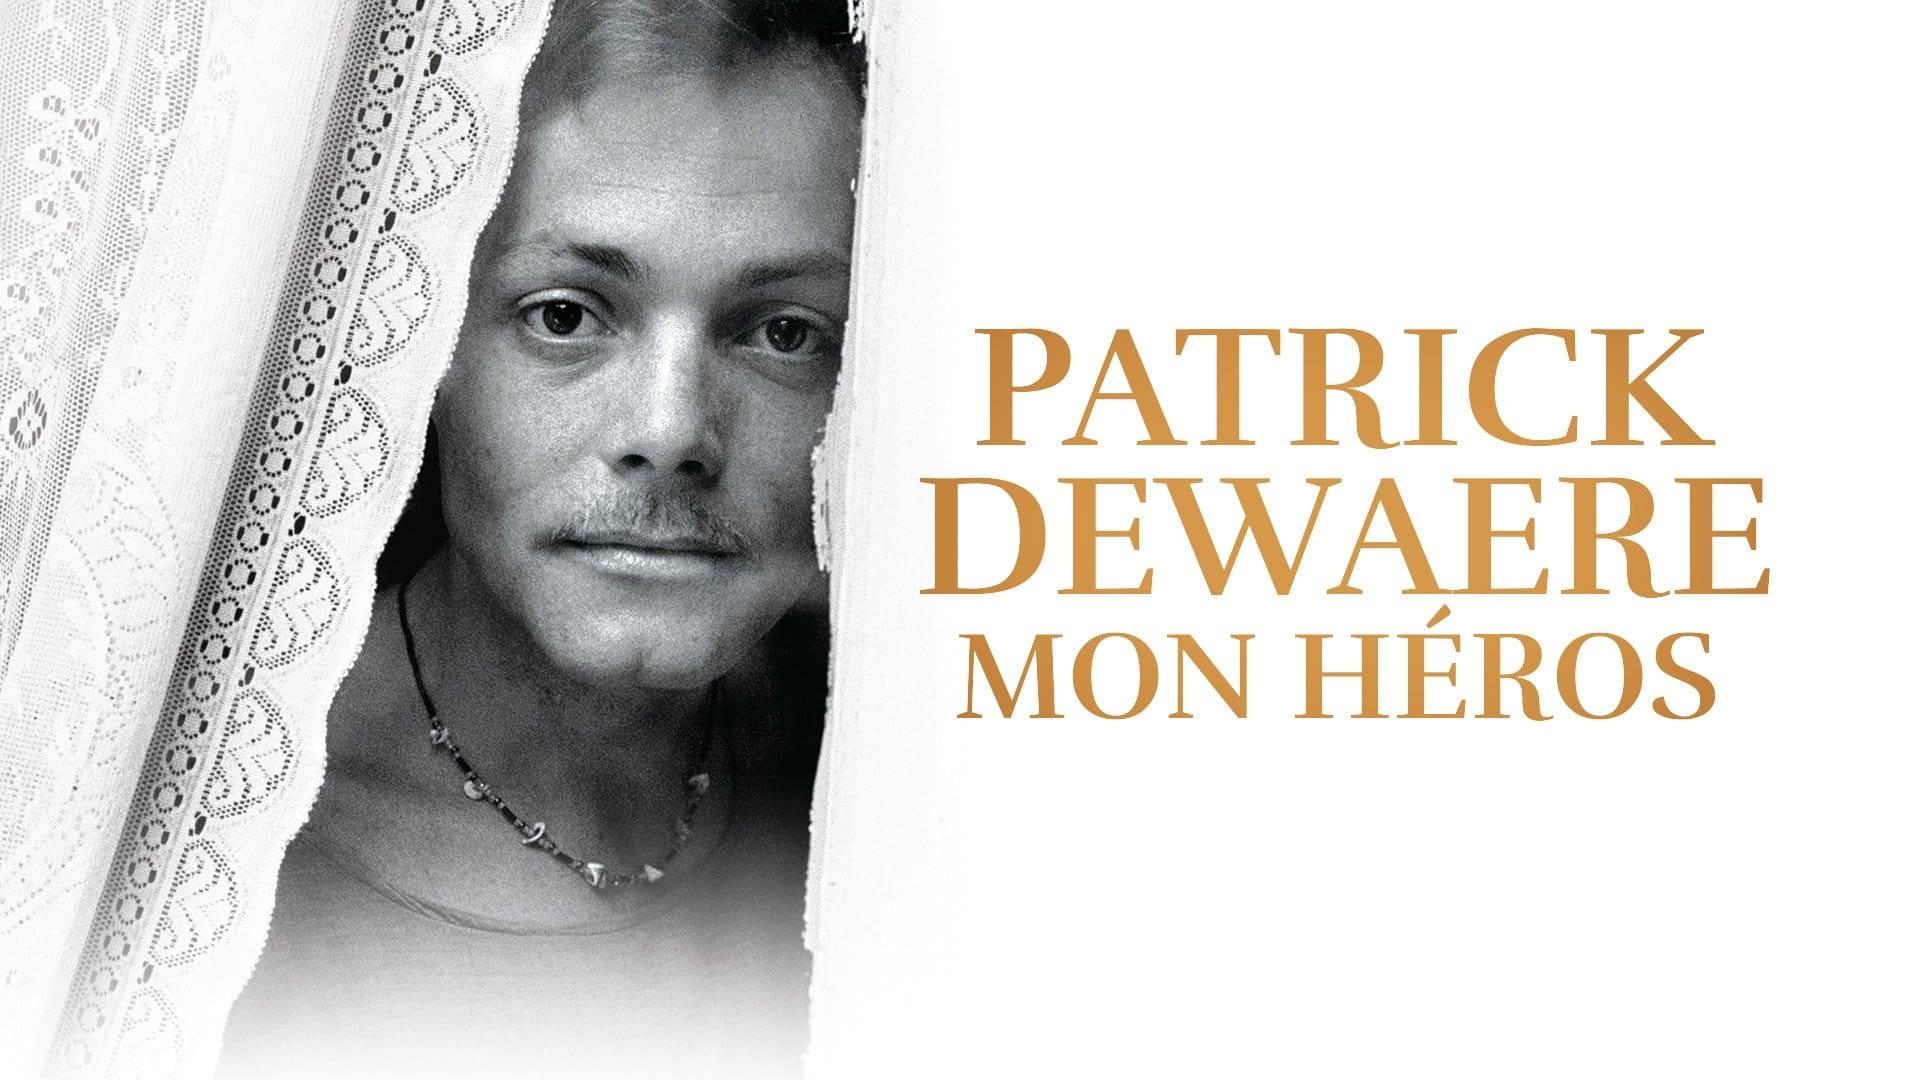 Patrick Dewaere, My Hero backdrop